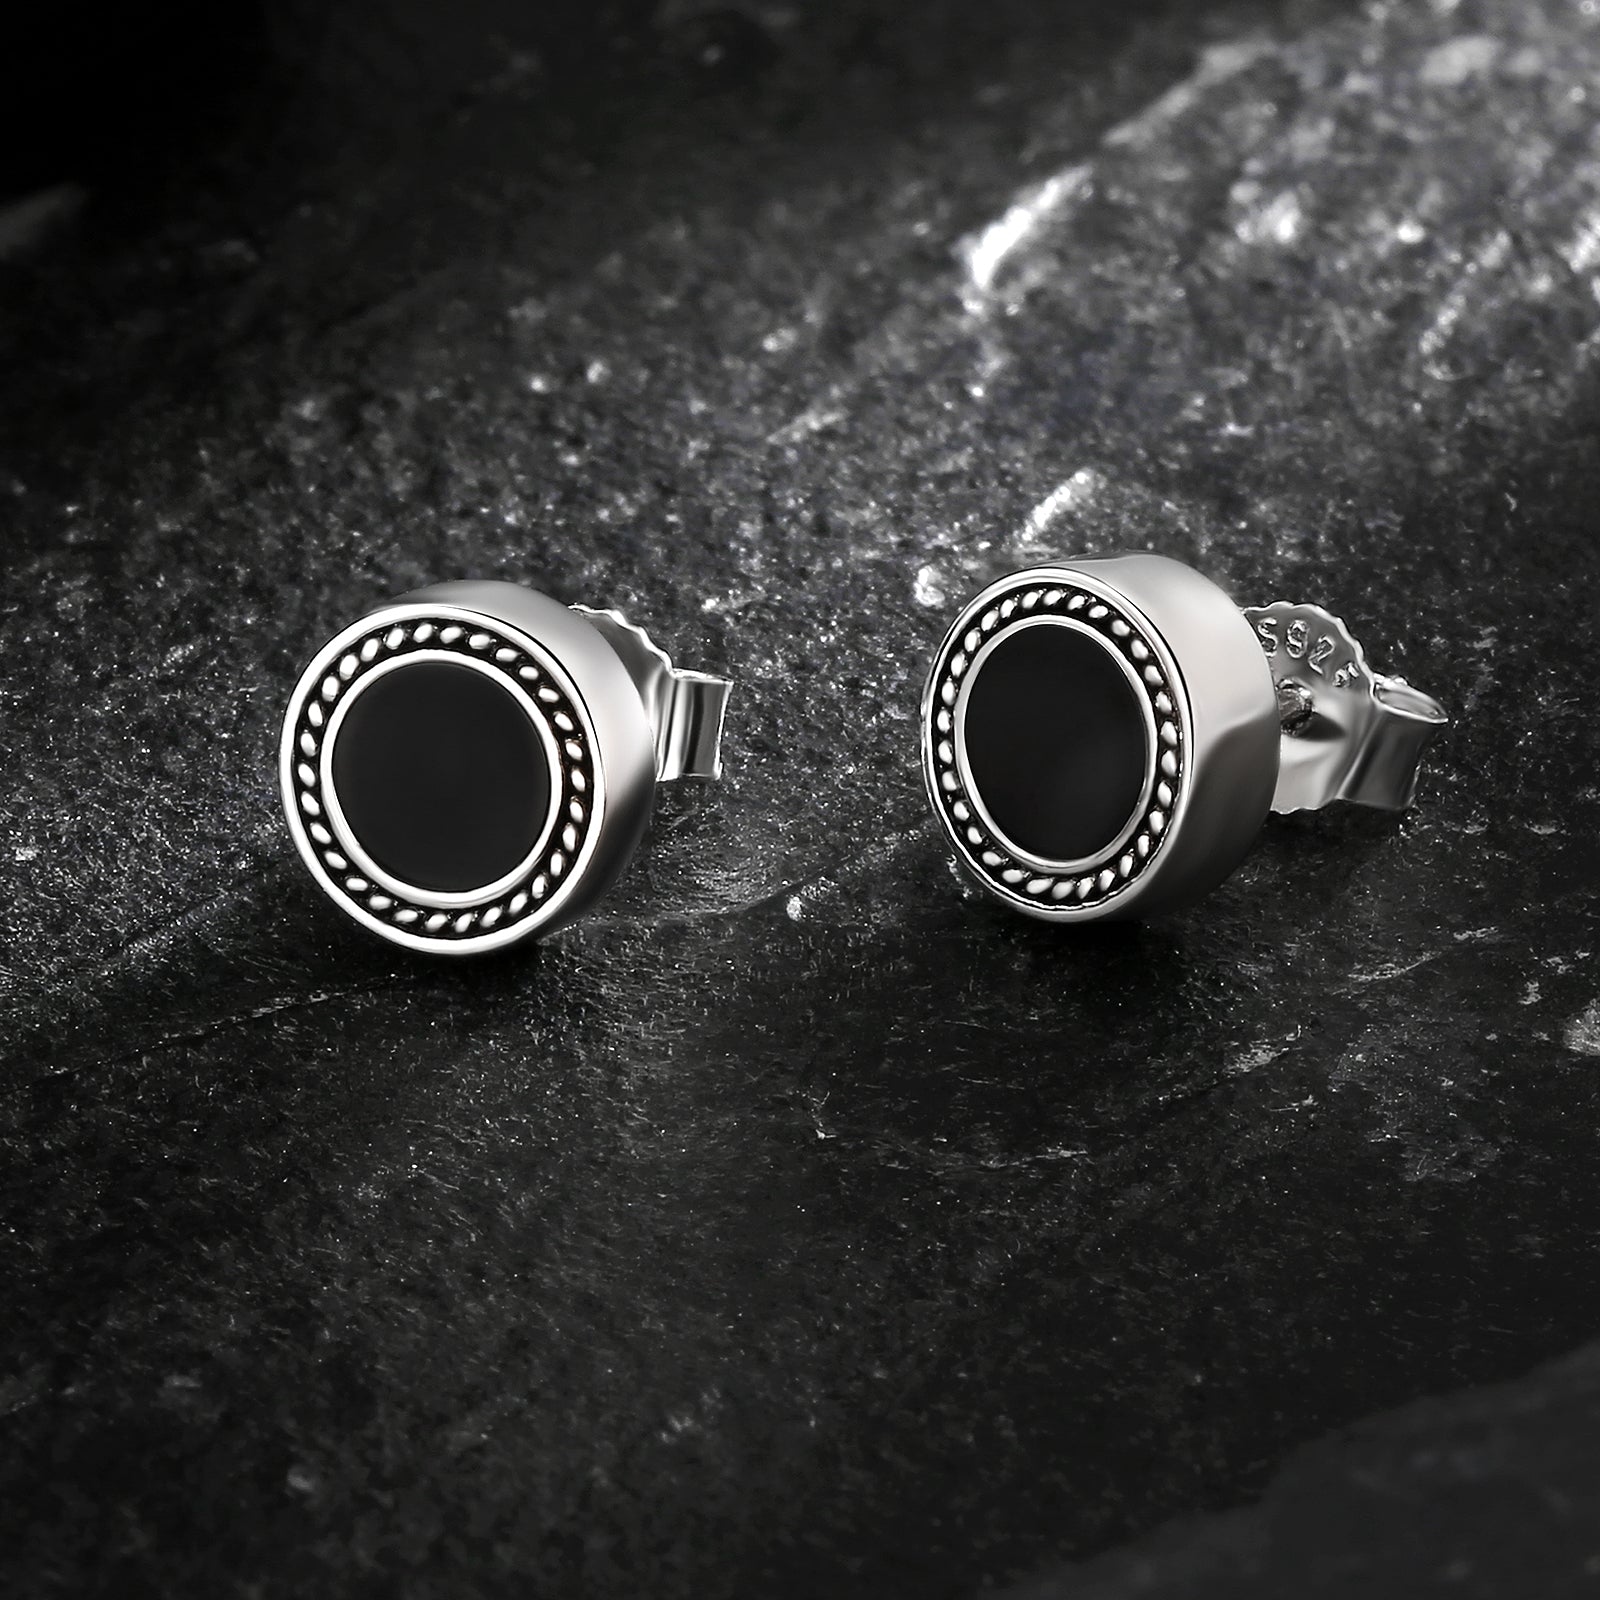 Wholesale Men's Earrings 8mm Radial Black Agate Round Iced Stud Earrings for Men